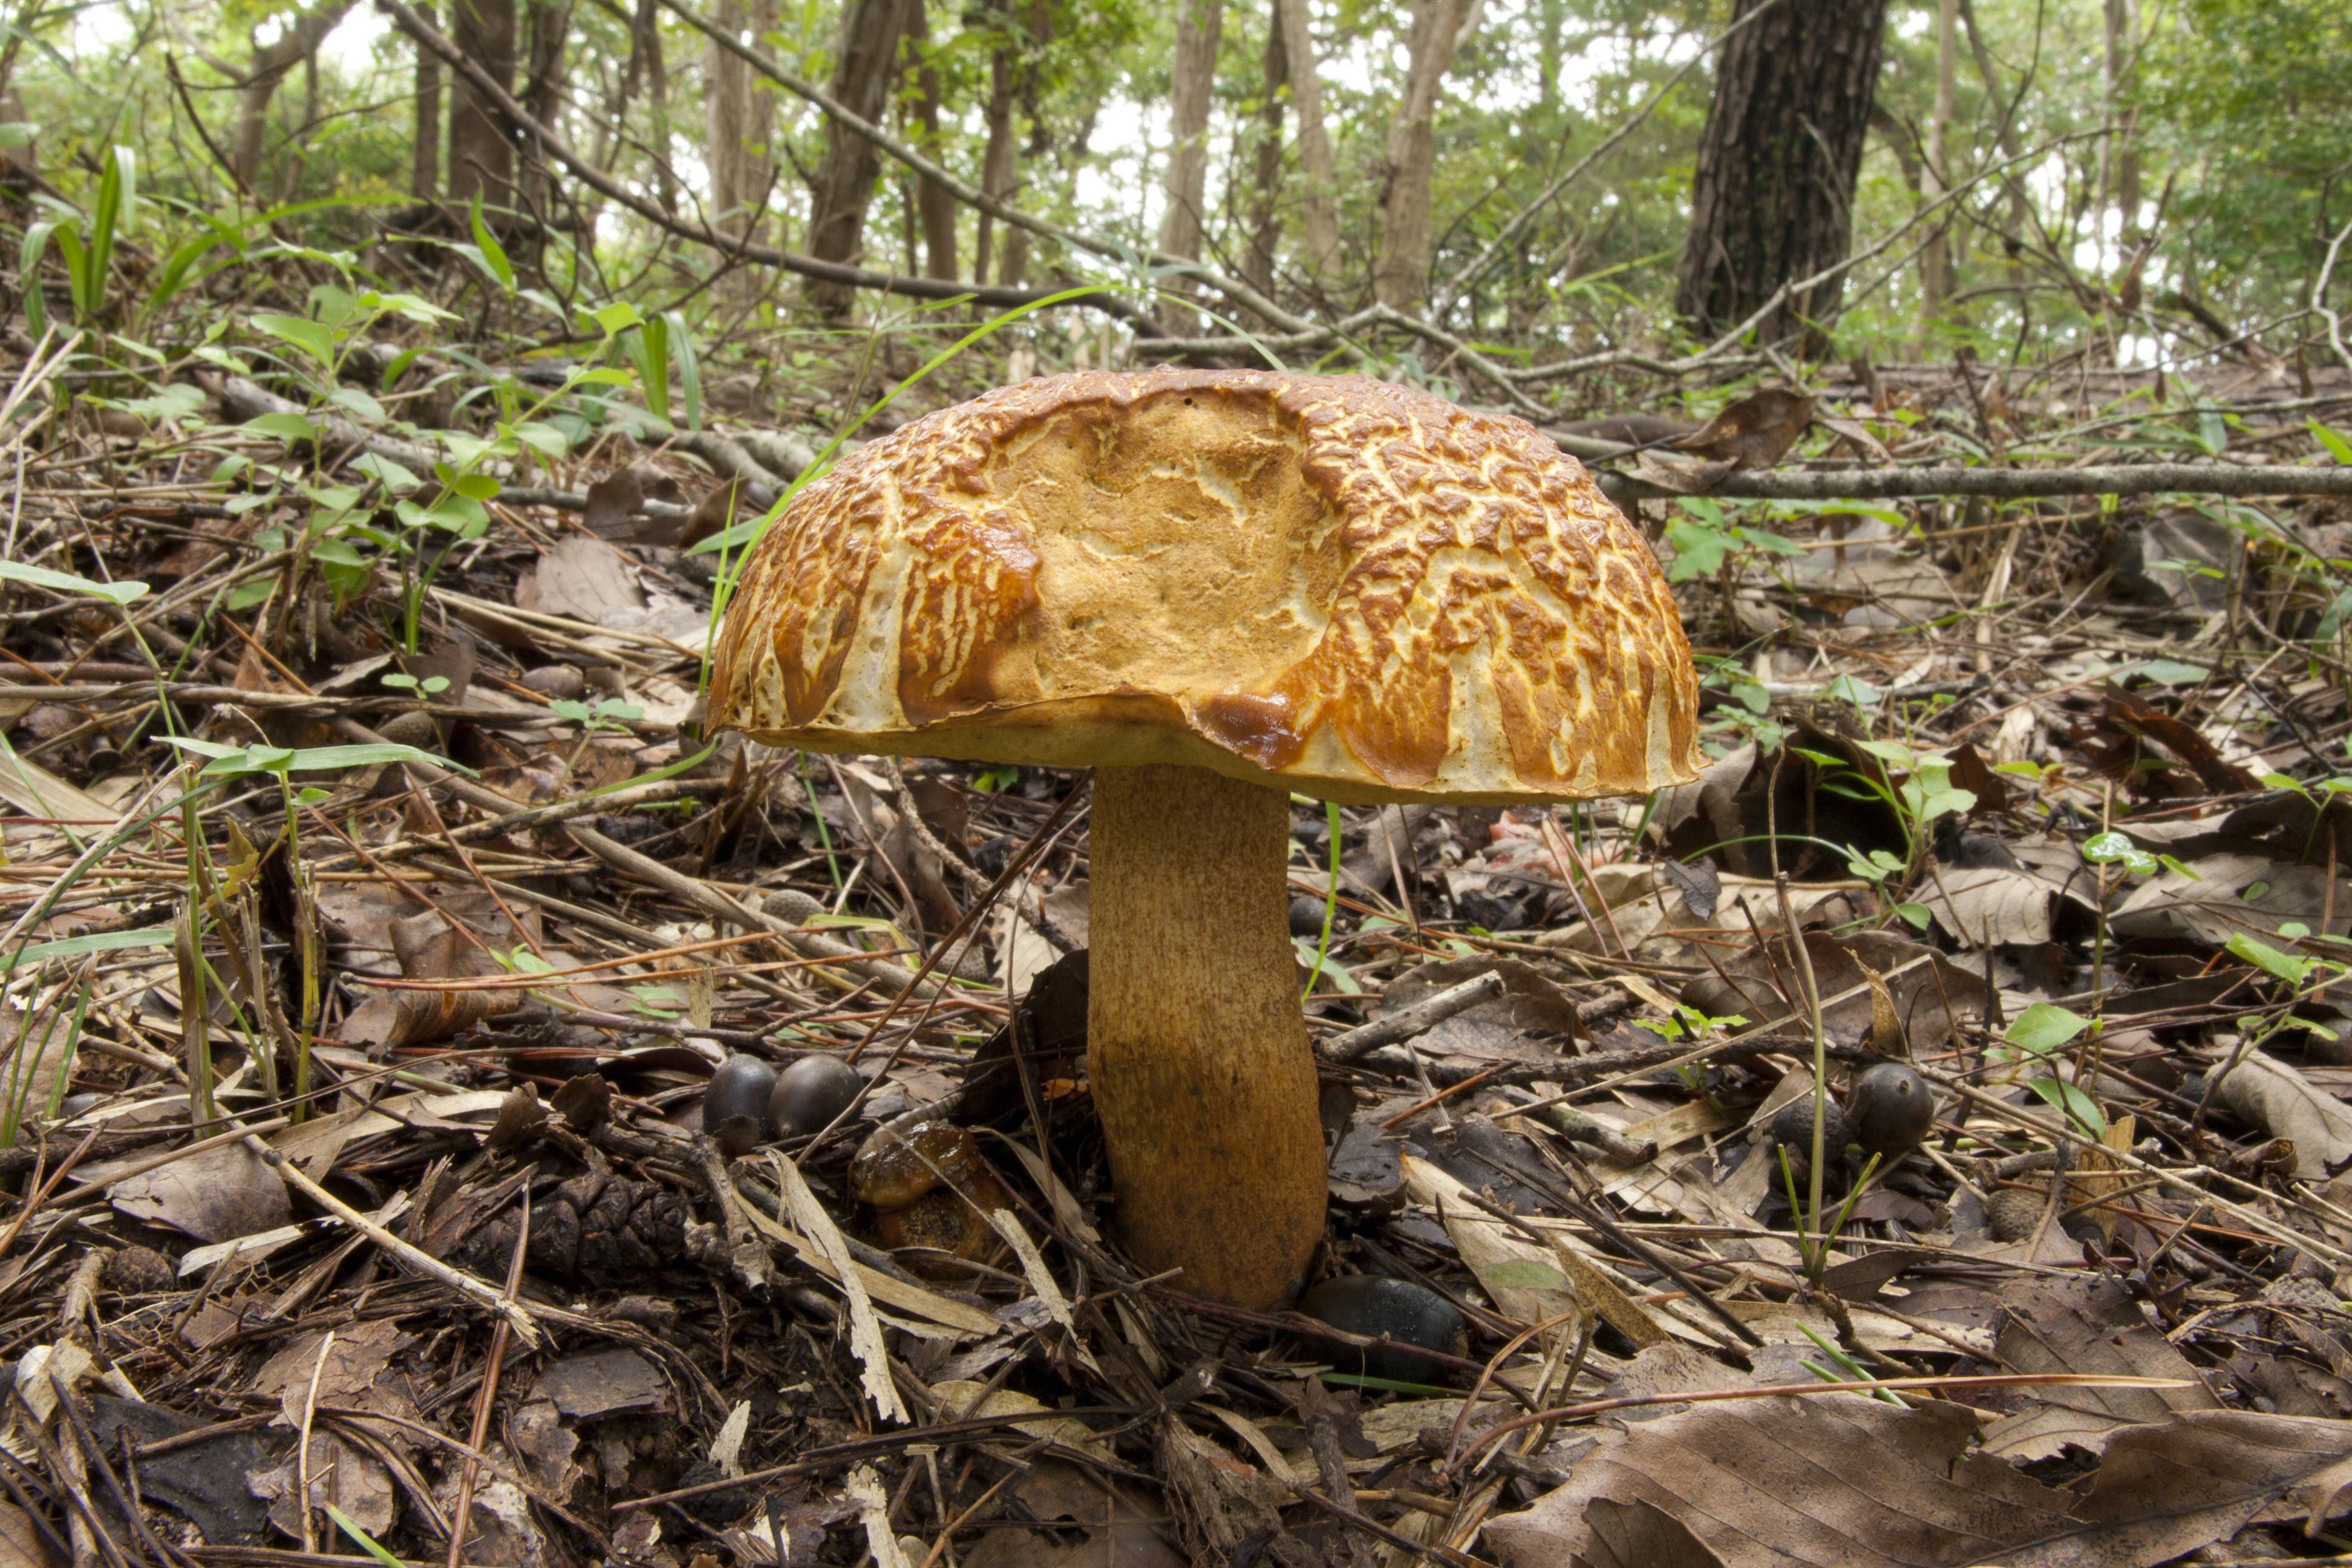 Подберезовик и подосиновик: описание и фото грибов-обабков +видео